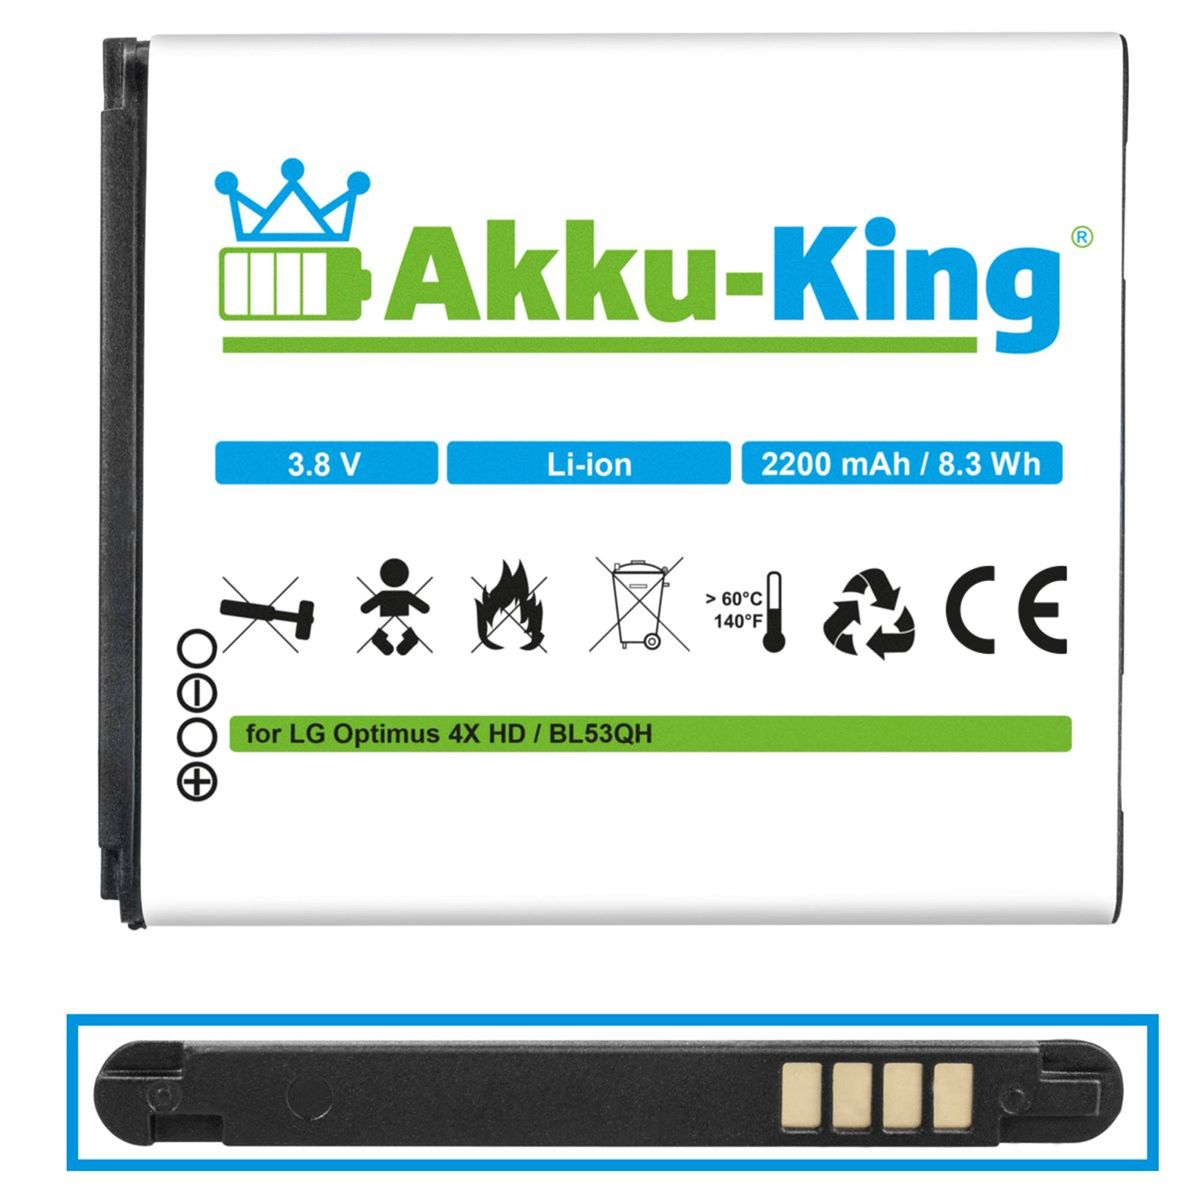 kompatibel Handy-Akku, mit 2200mAh 3.8 LG AKKU-KING Li-Ion Volt, BL-53QH Akku